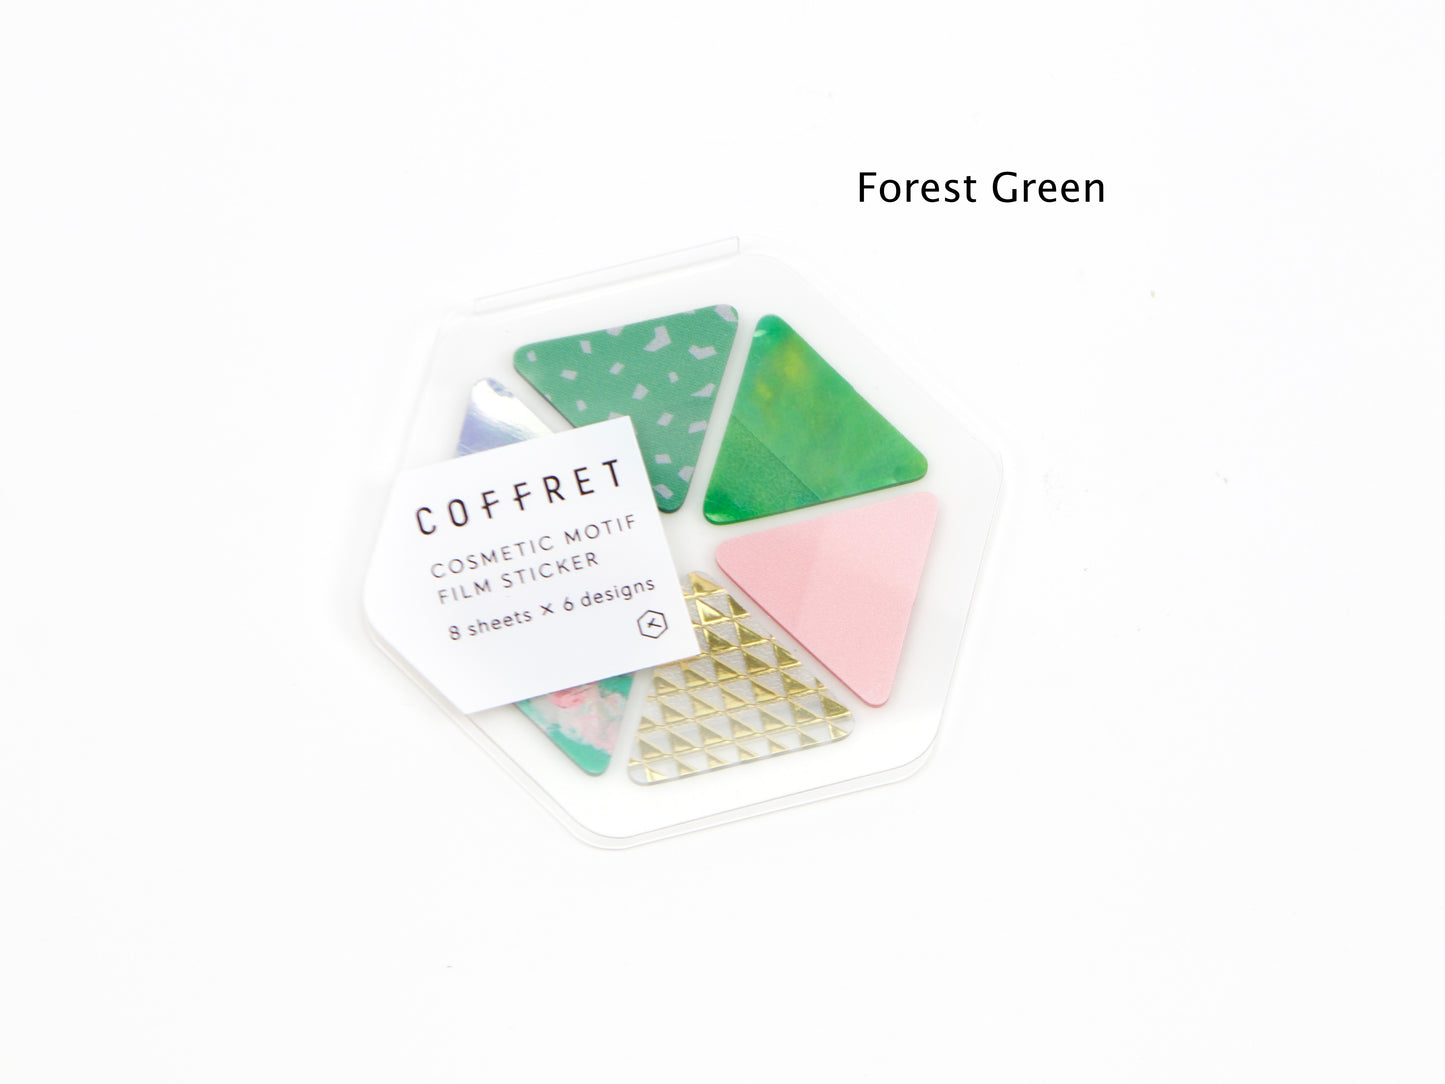 Hitotoki Coffret Cosmetic Motif Film Sticker Triangles